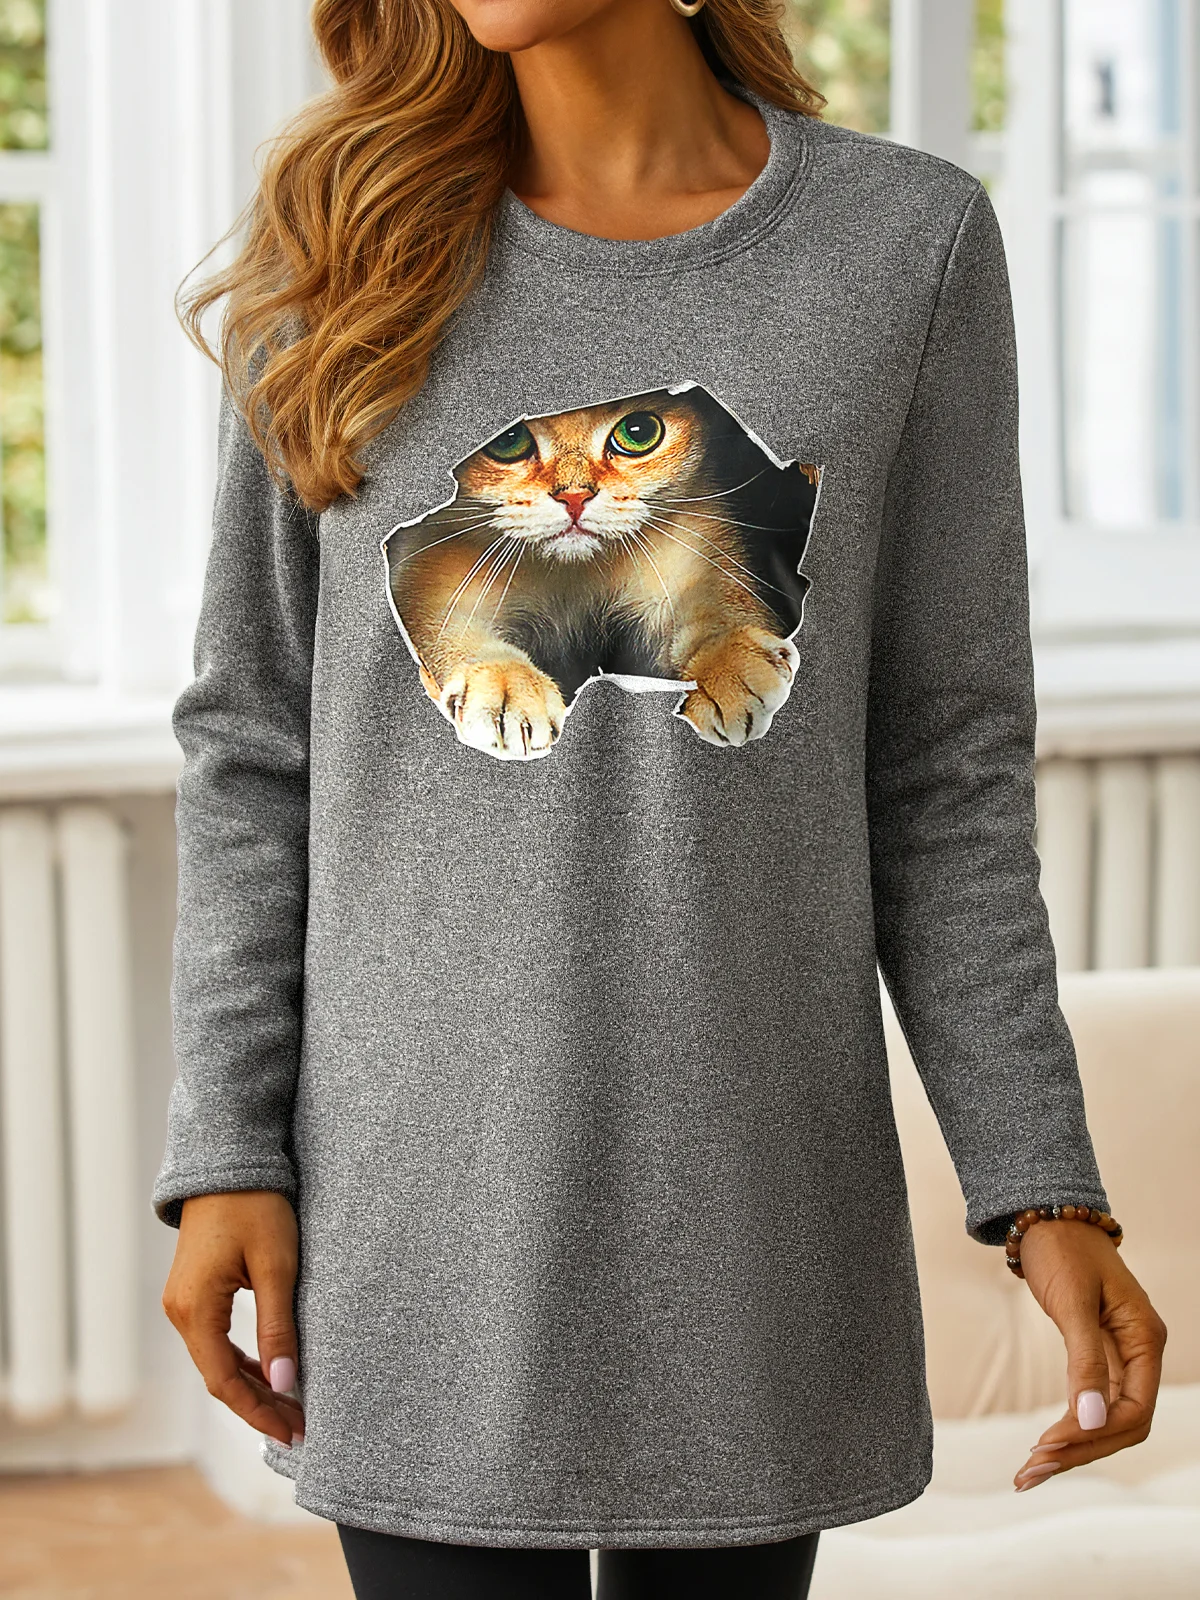 Women Crew Neck Cat Casual Warmth Long Sleeve Sweatshirt